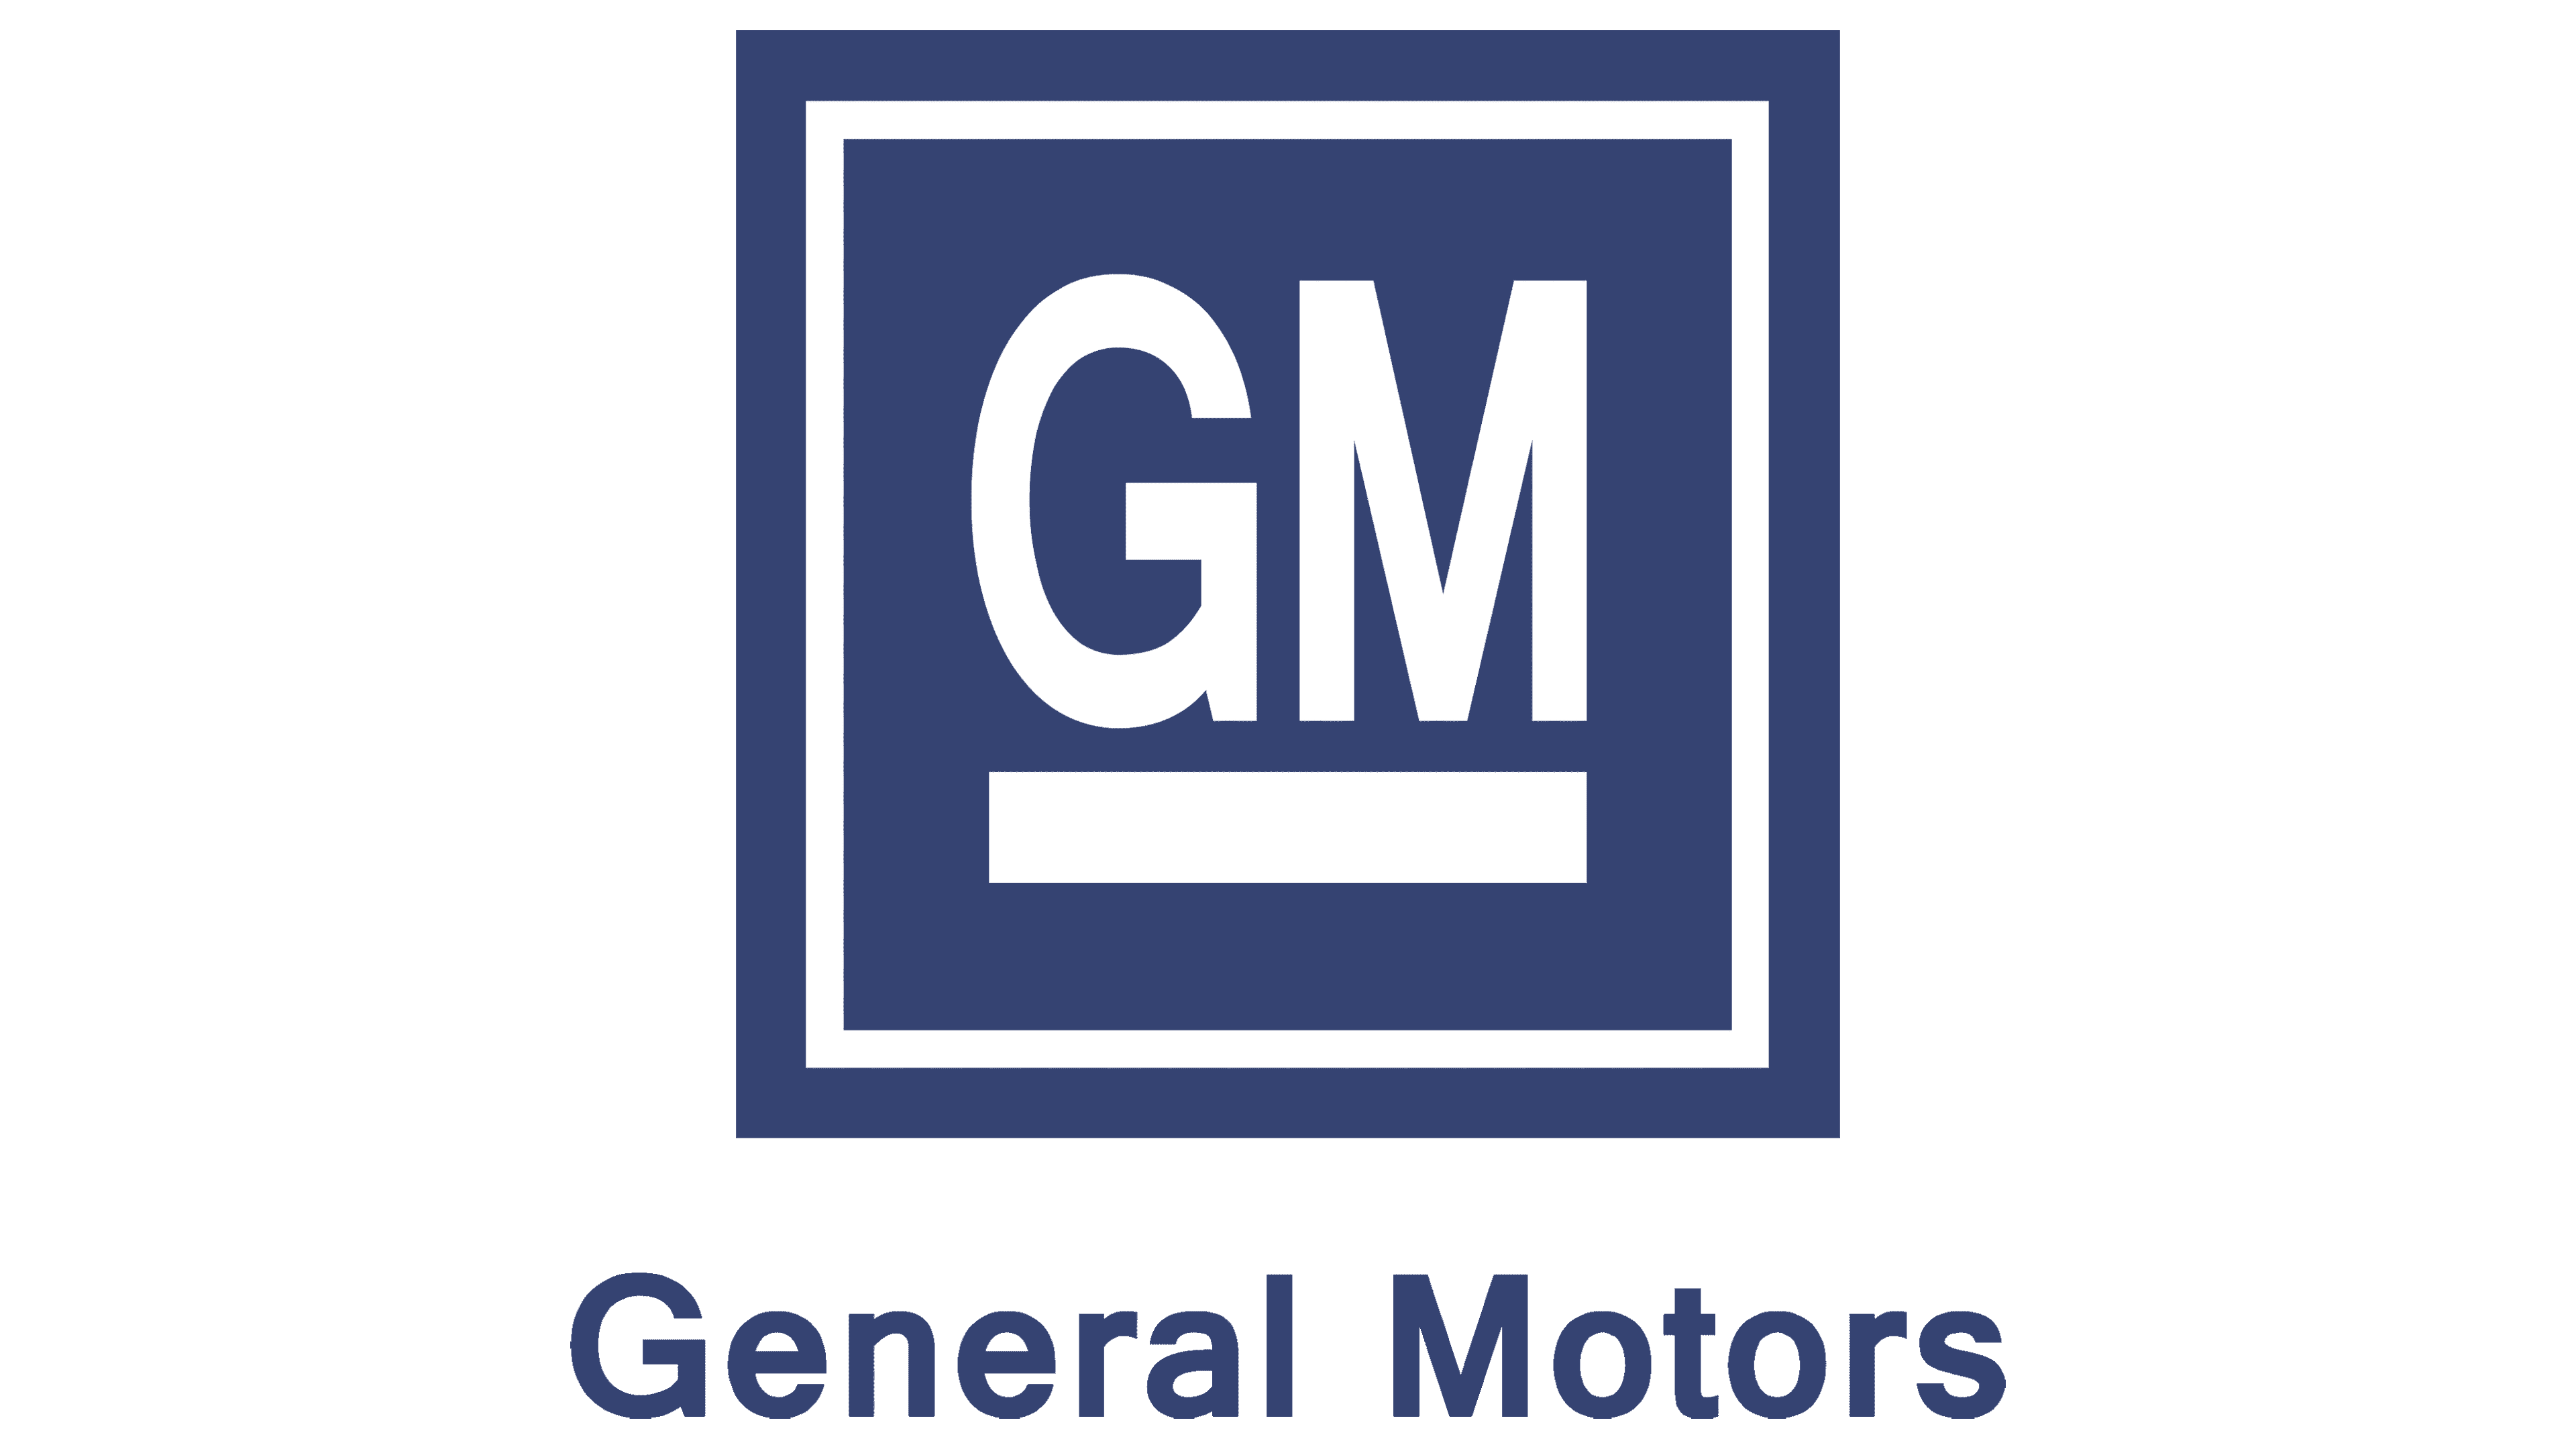 GM Logo PNG Image HD